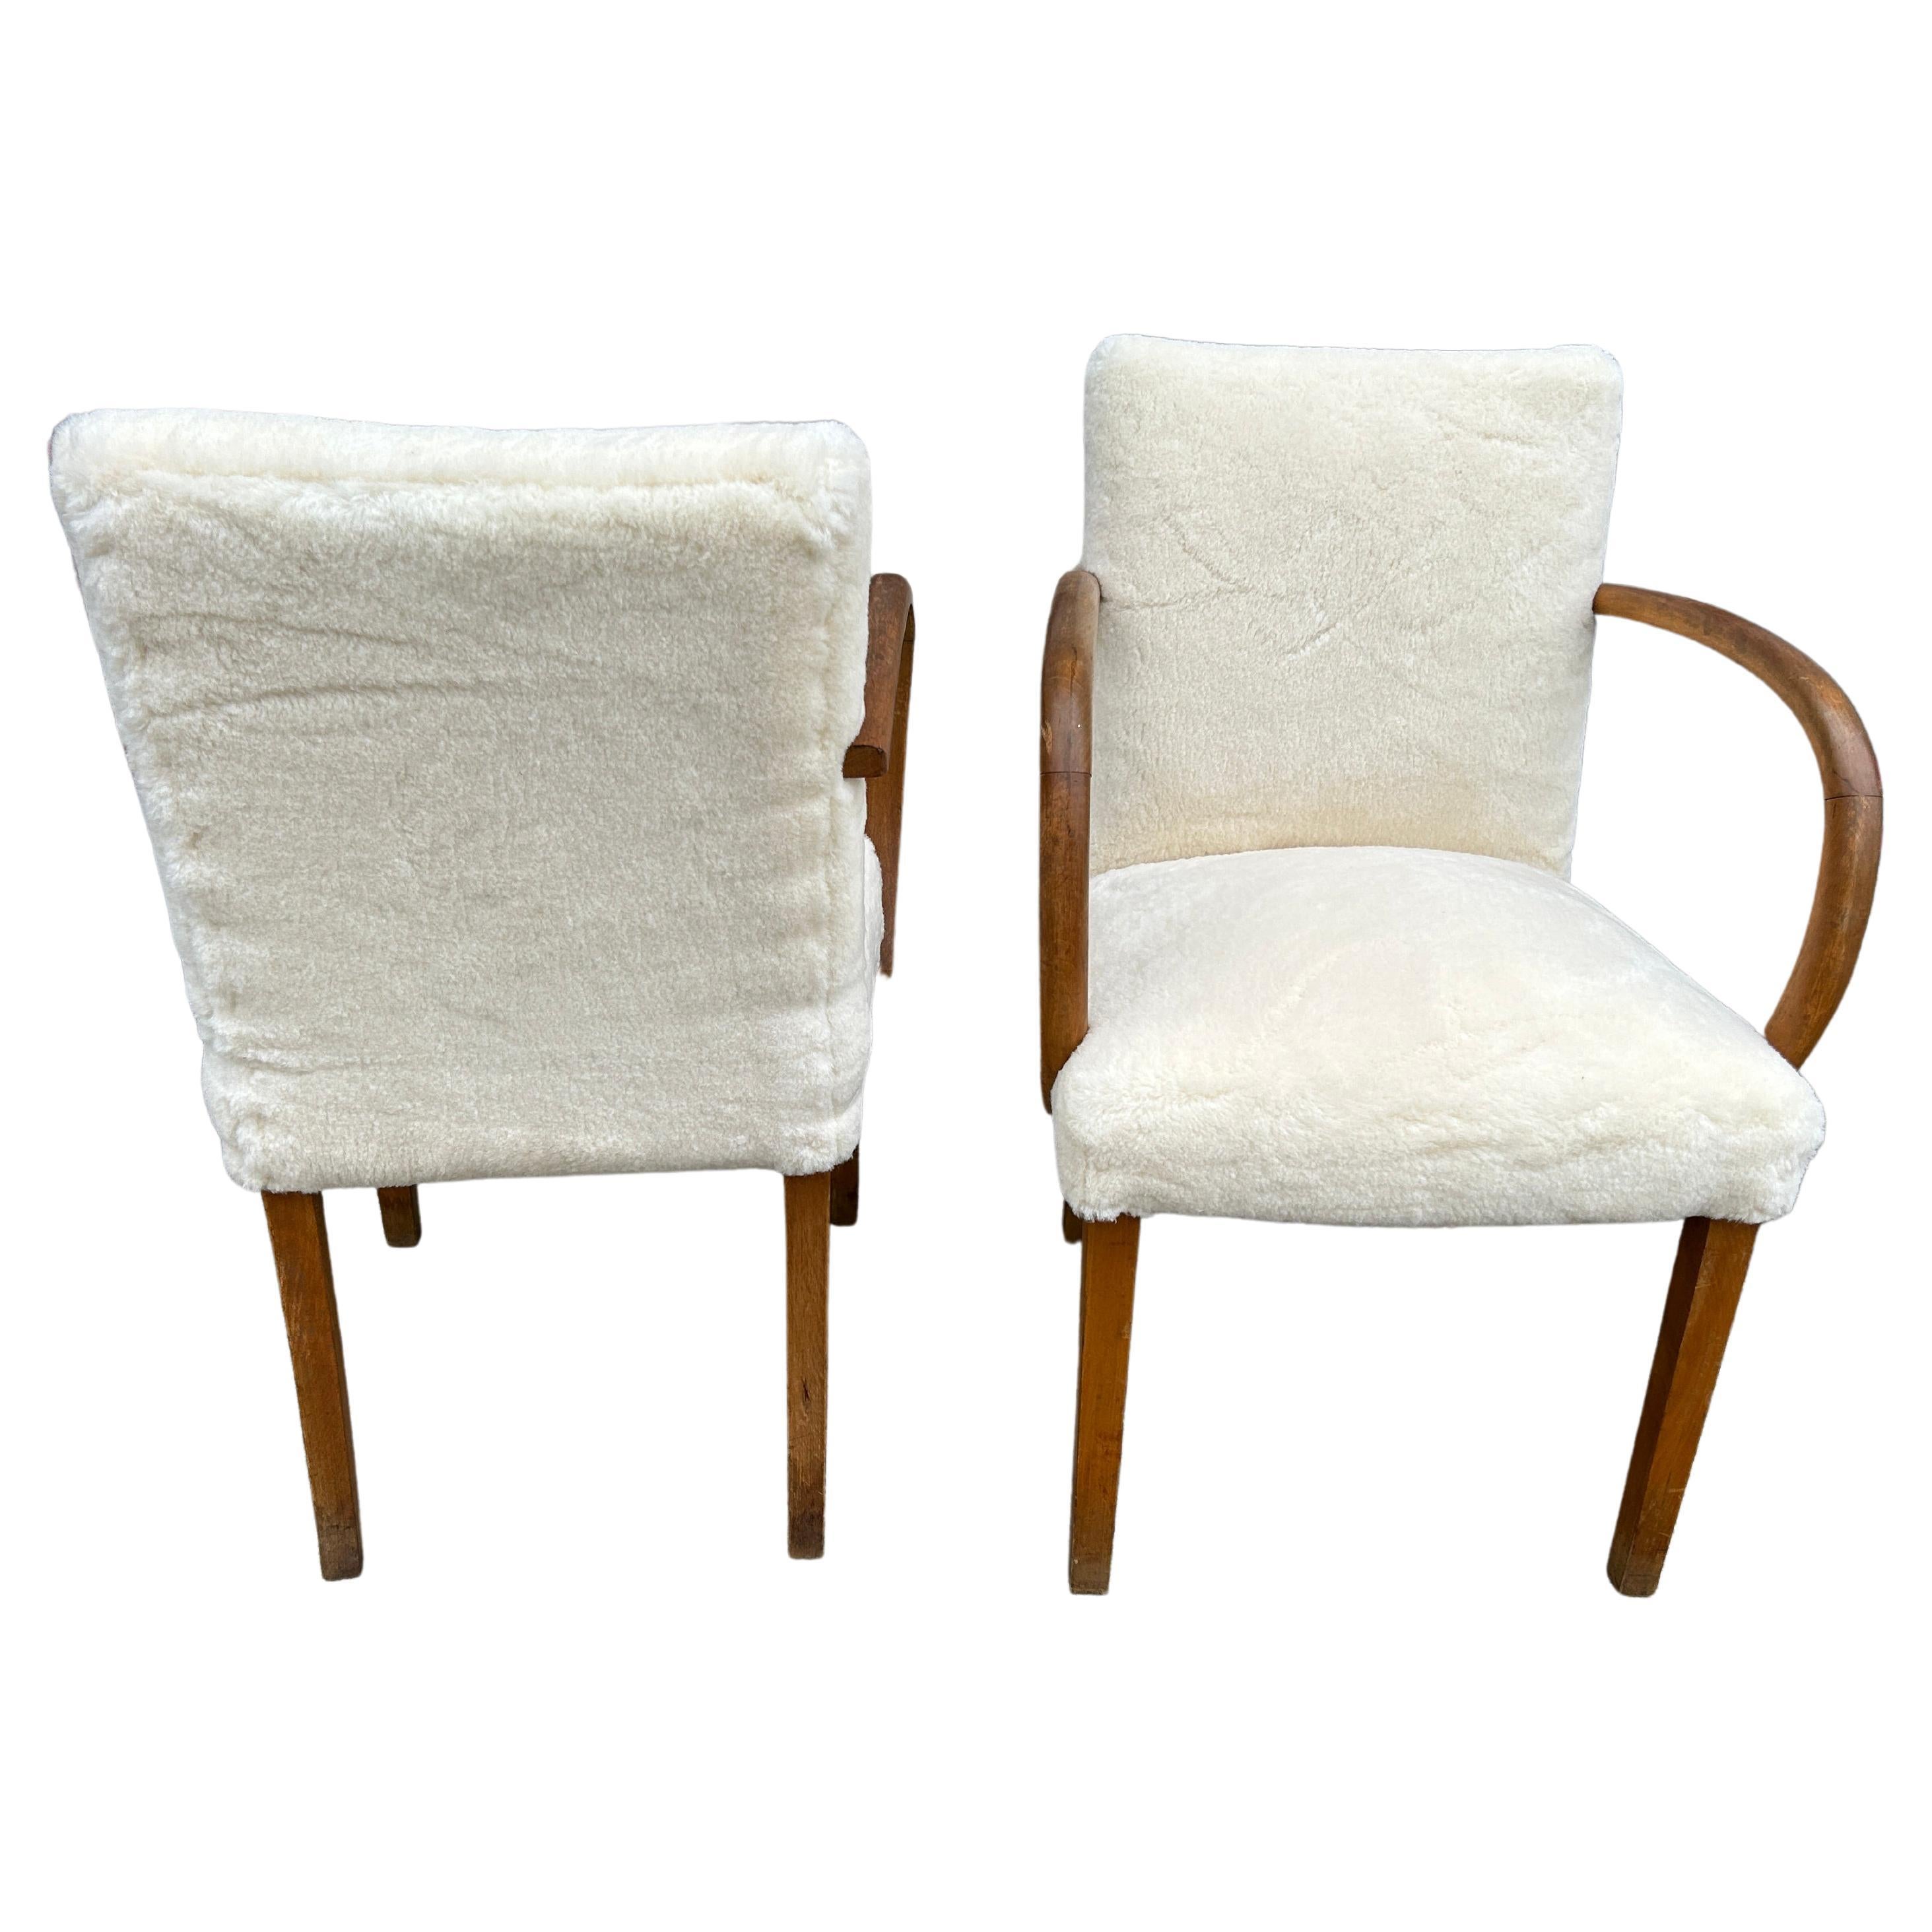 Paire de fauteuils courbes de style scandinave moderne avec revêtement en laine Sherpa blanche. Beau design datant de 1950. Fabriqué en Suède. Situé à Brooklyn NYC.

Les chaises sont vendues par paire (2)

Dimensions 21